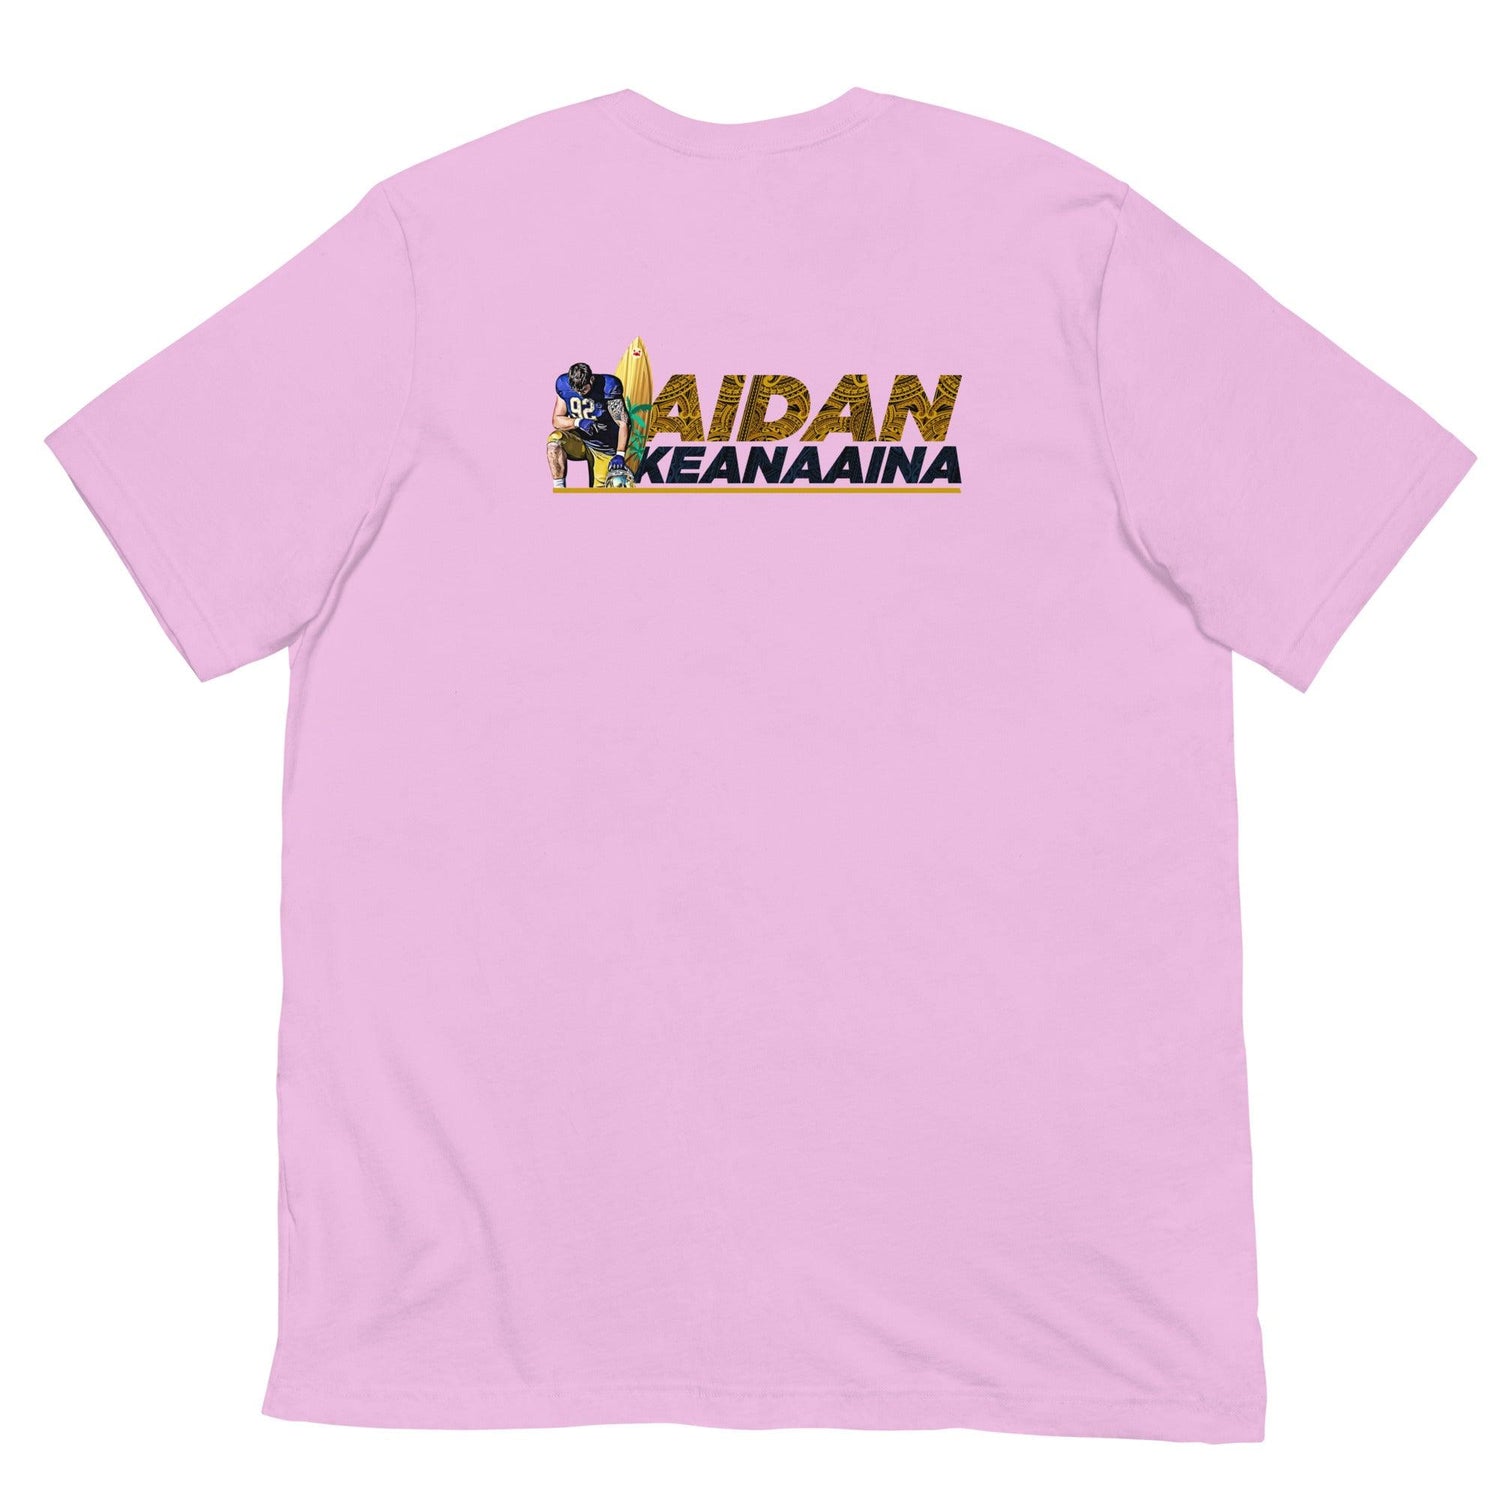 Aidan Keanaaina "92" t-shirt - Fan Arch